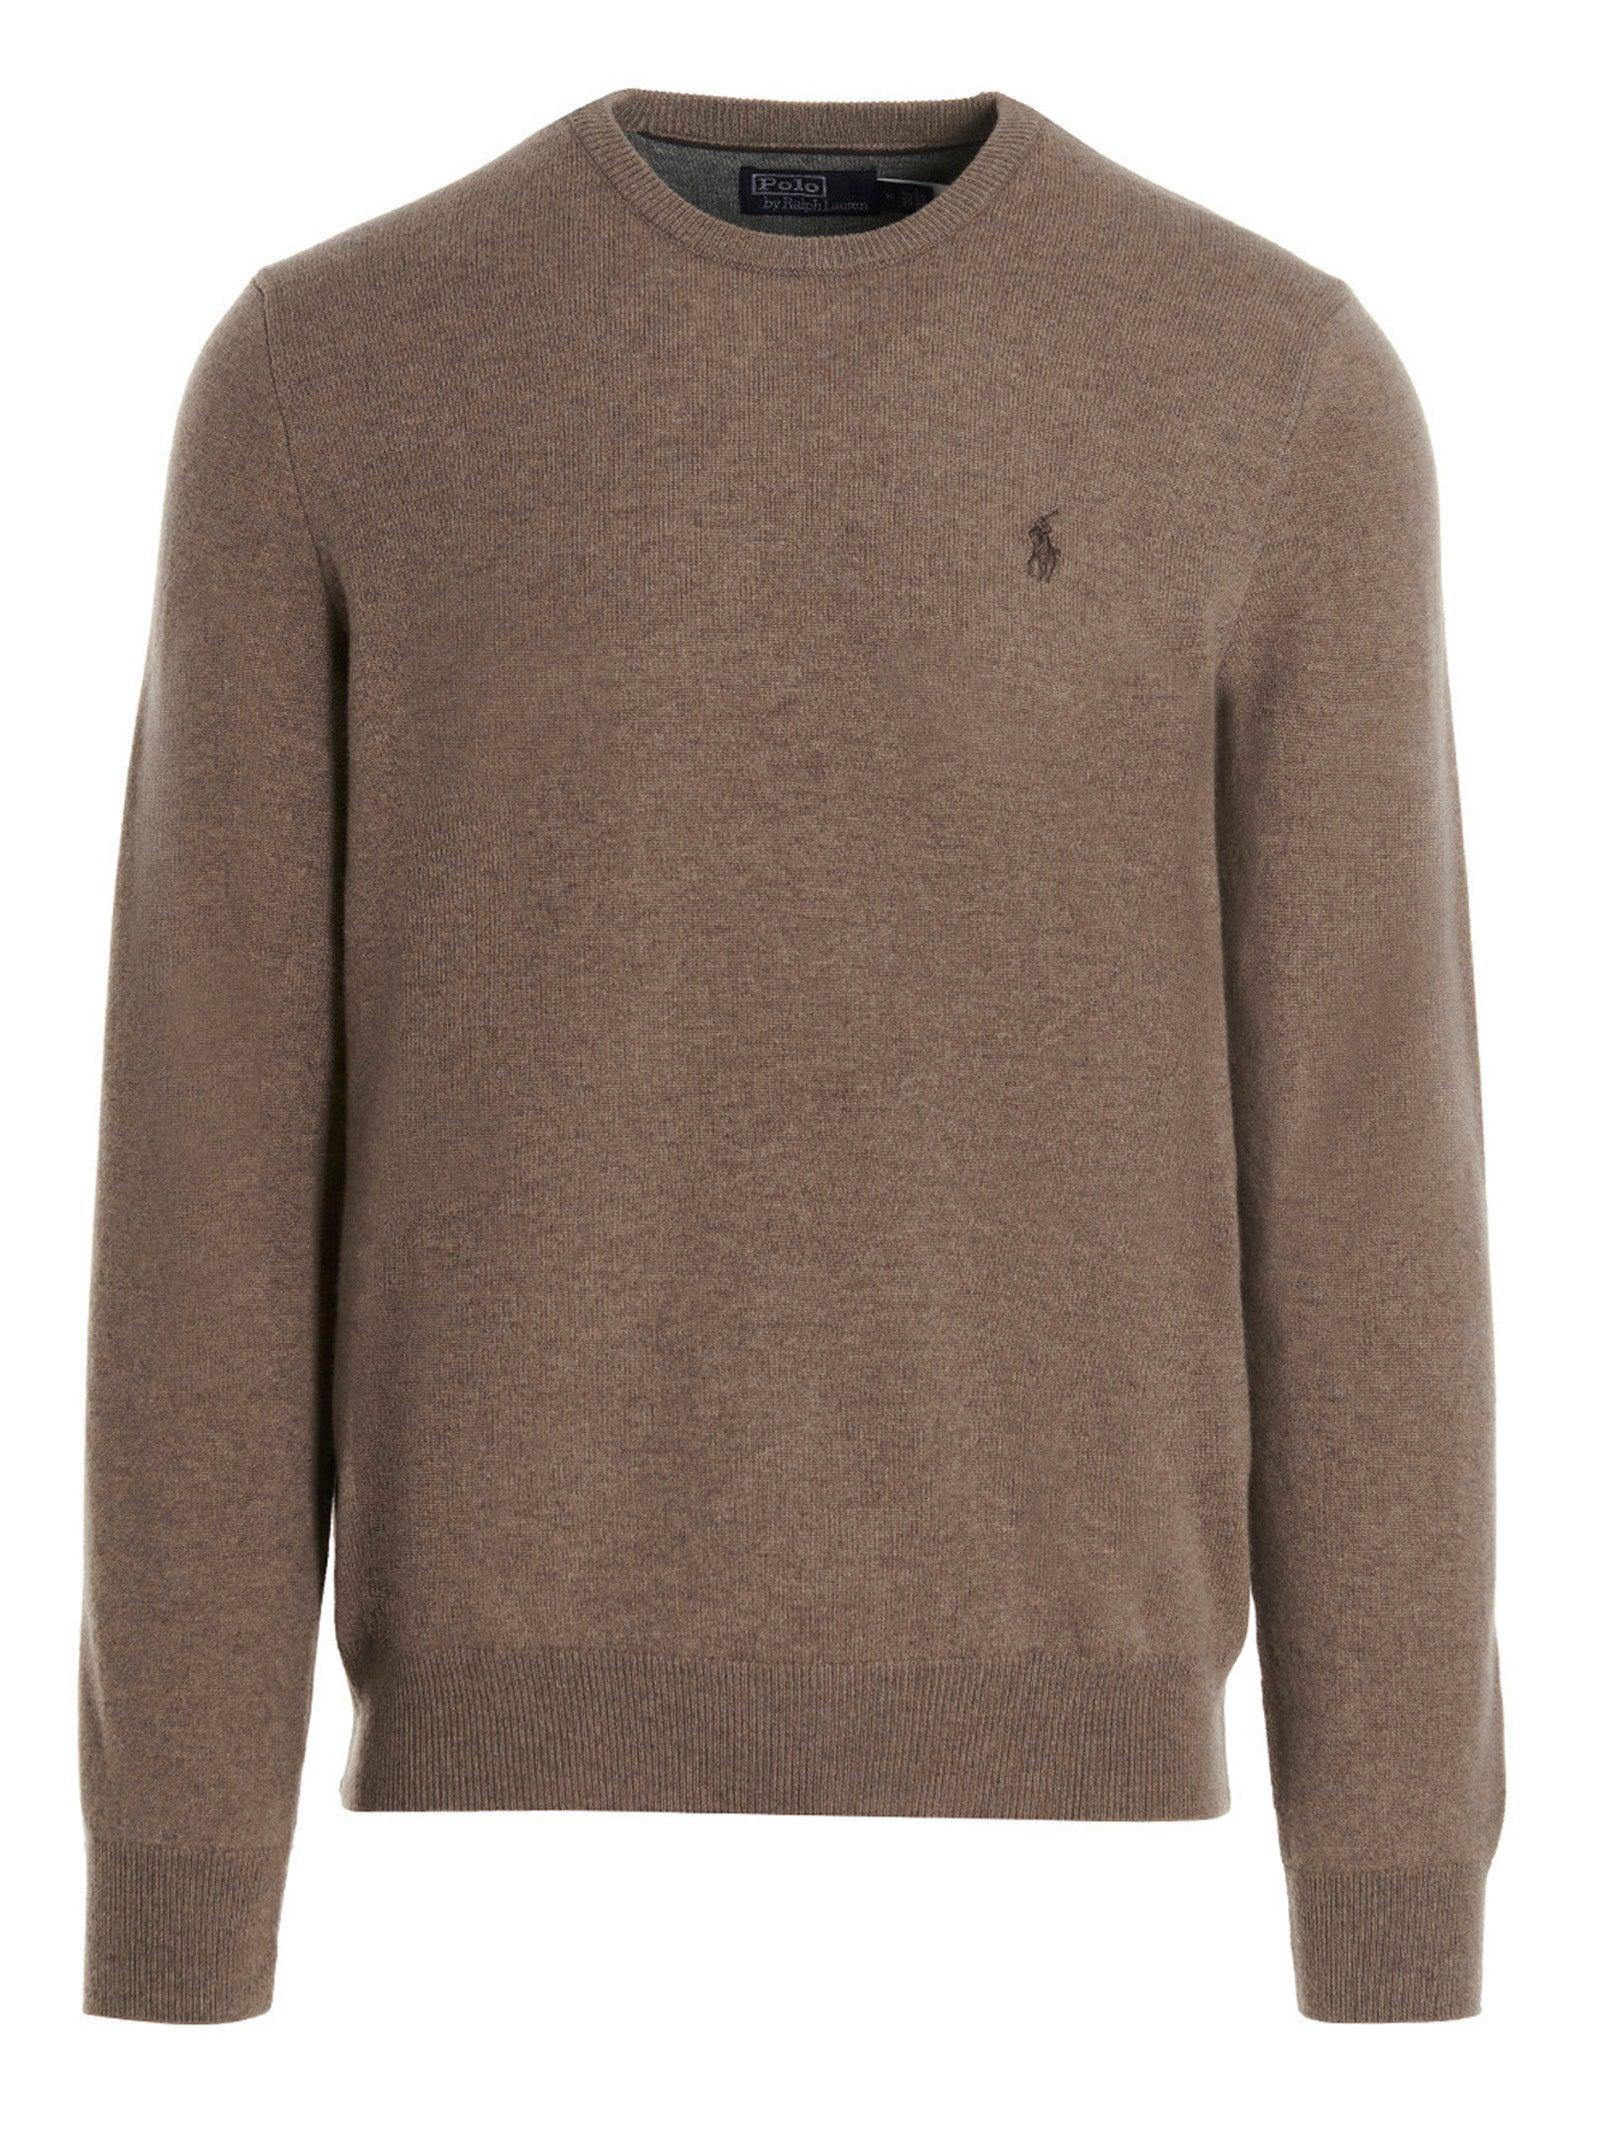 Polo Ralph Lauren 'cavallino' Sweater in Brown for Men | Lyst